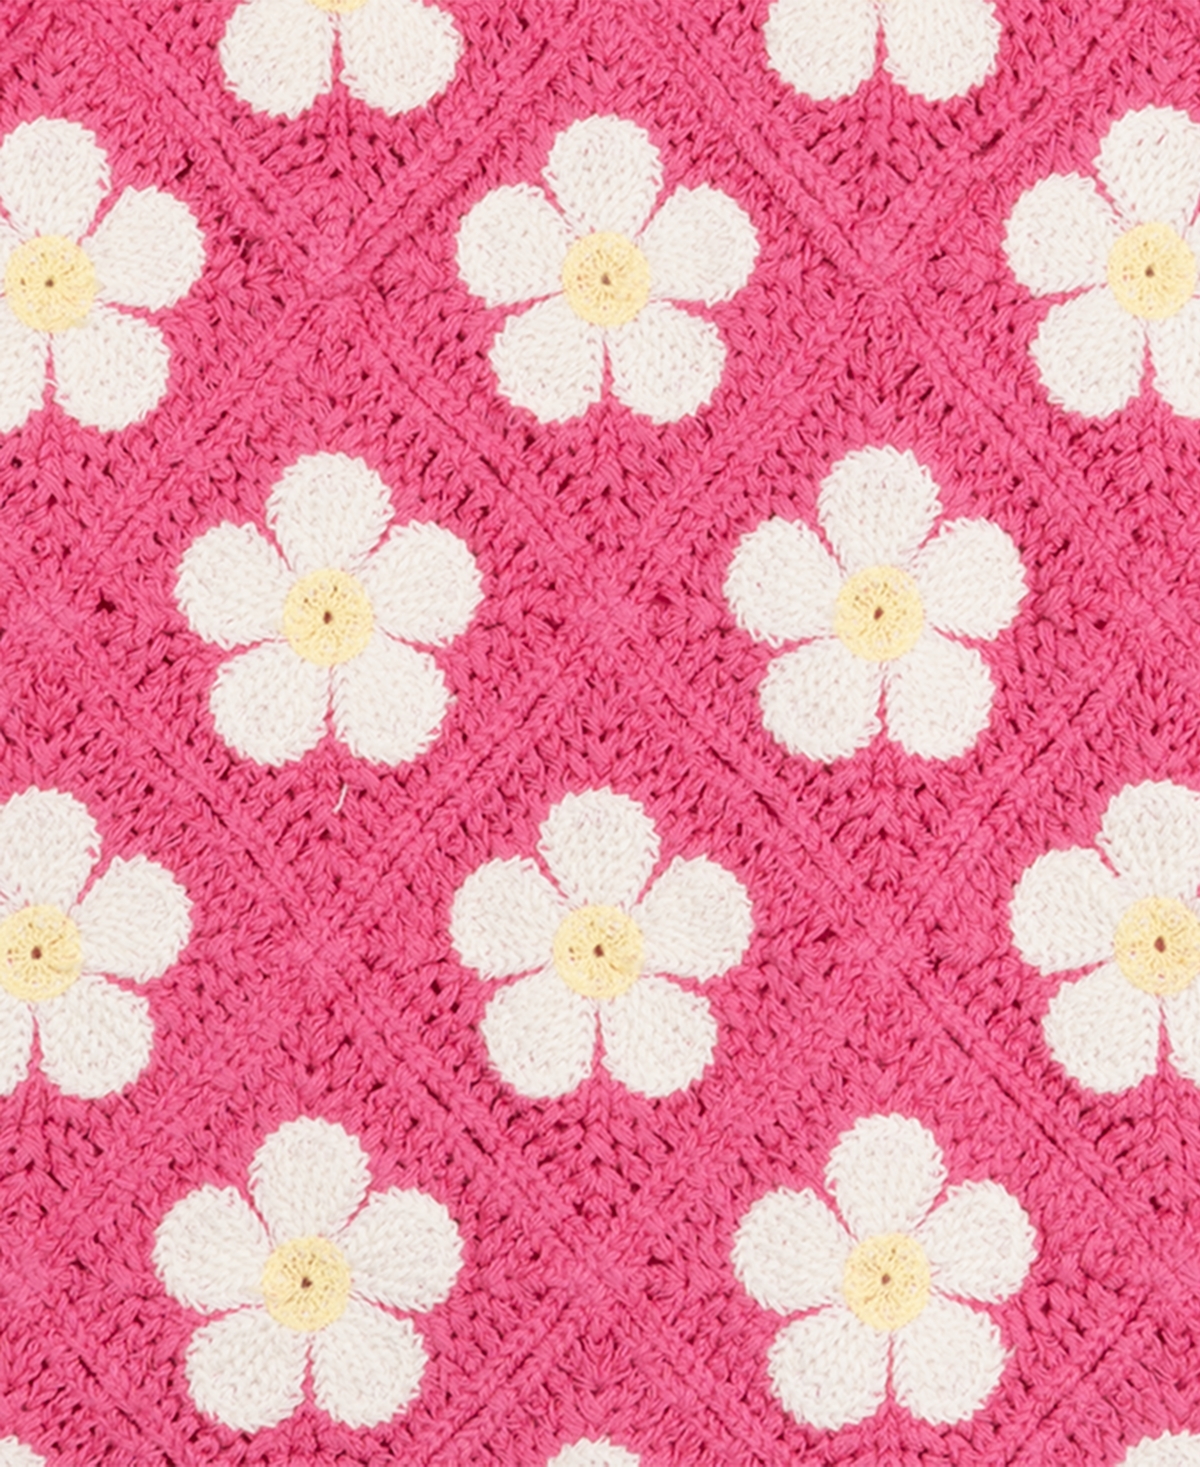 Shop Rare Editions Little Girls Daisy Crochet Dress In Pink